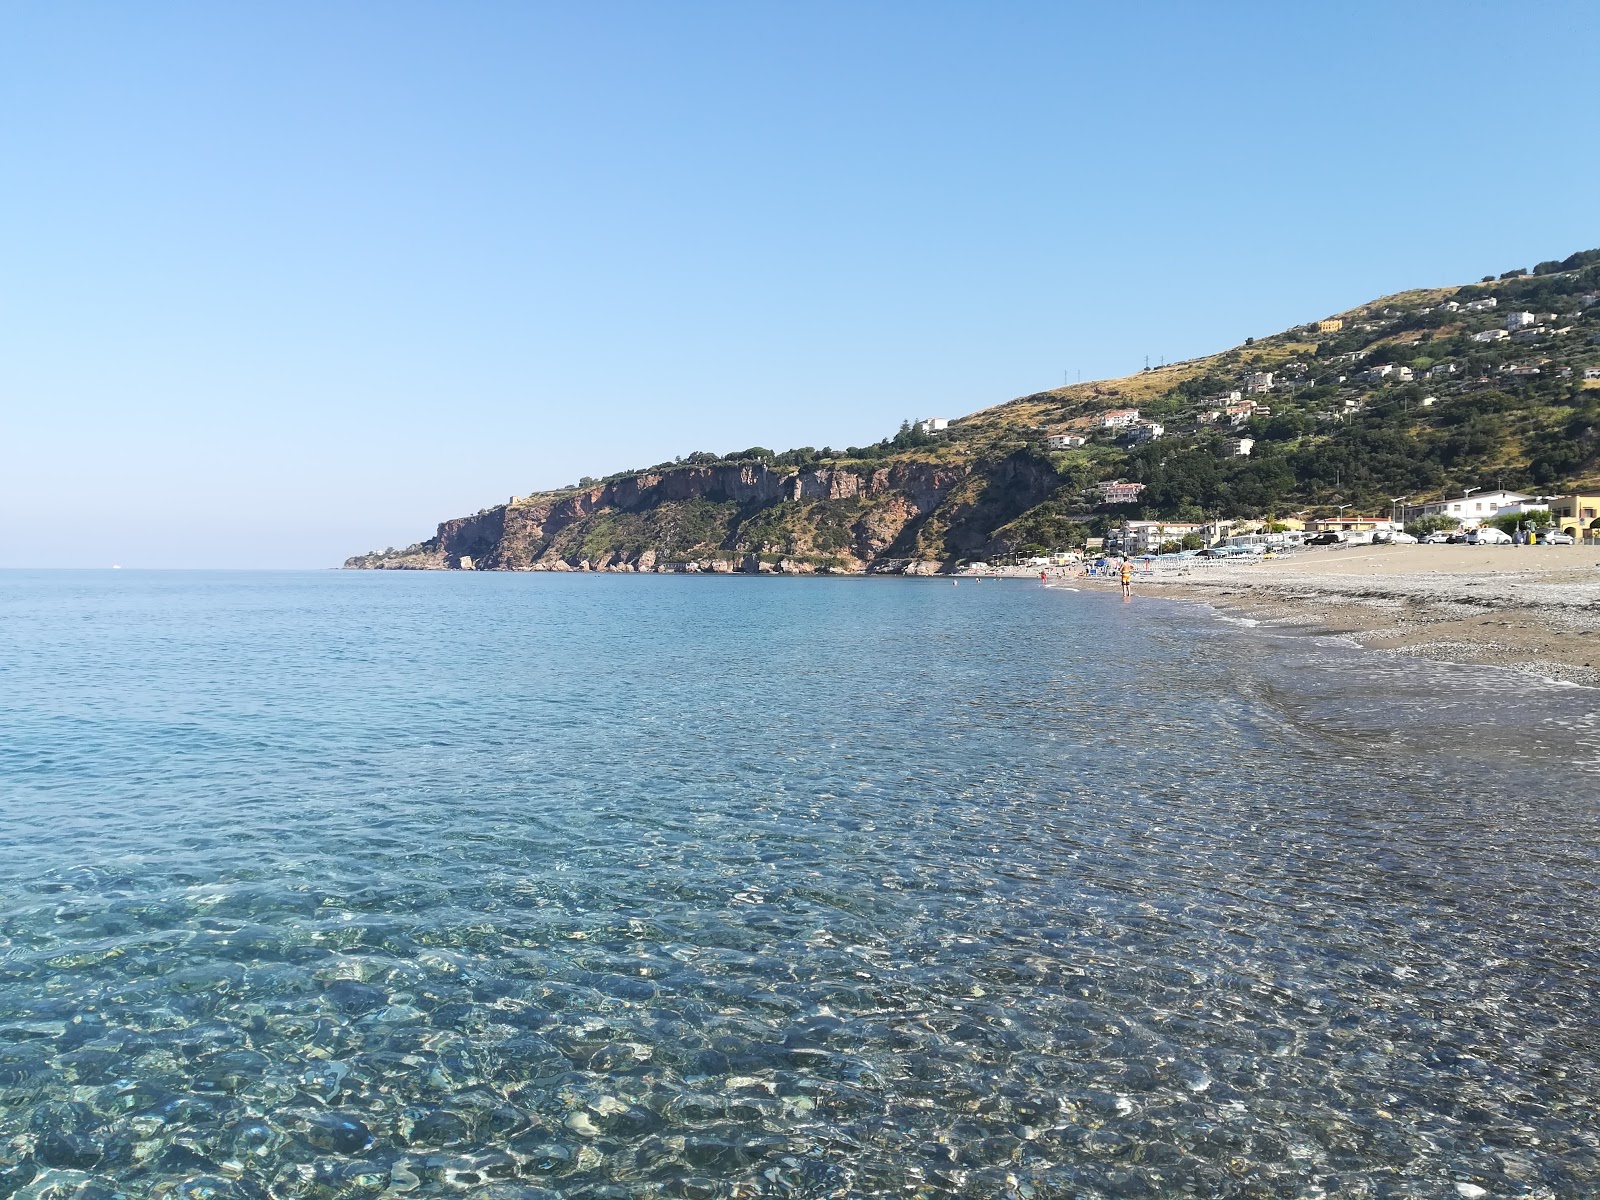 Cetraro beach II'in fotoğrafı gri ince çakıl taş yüzey ile